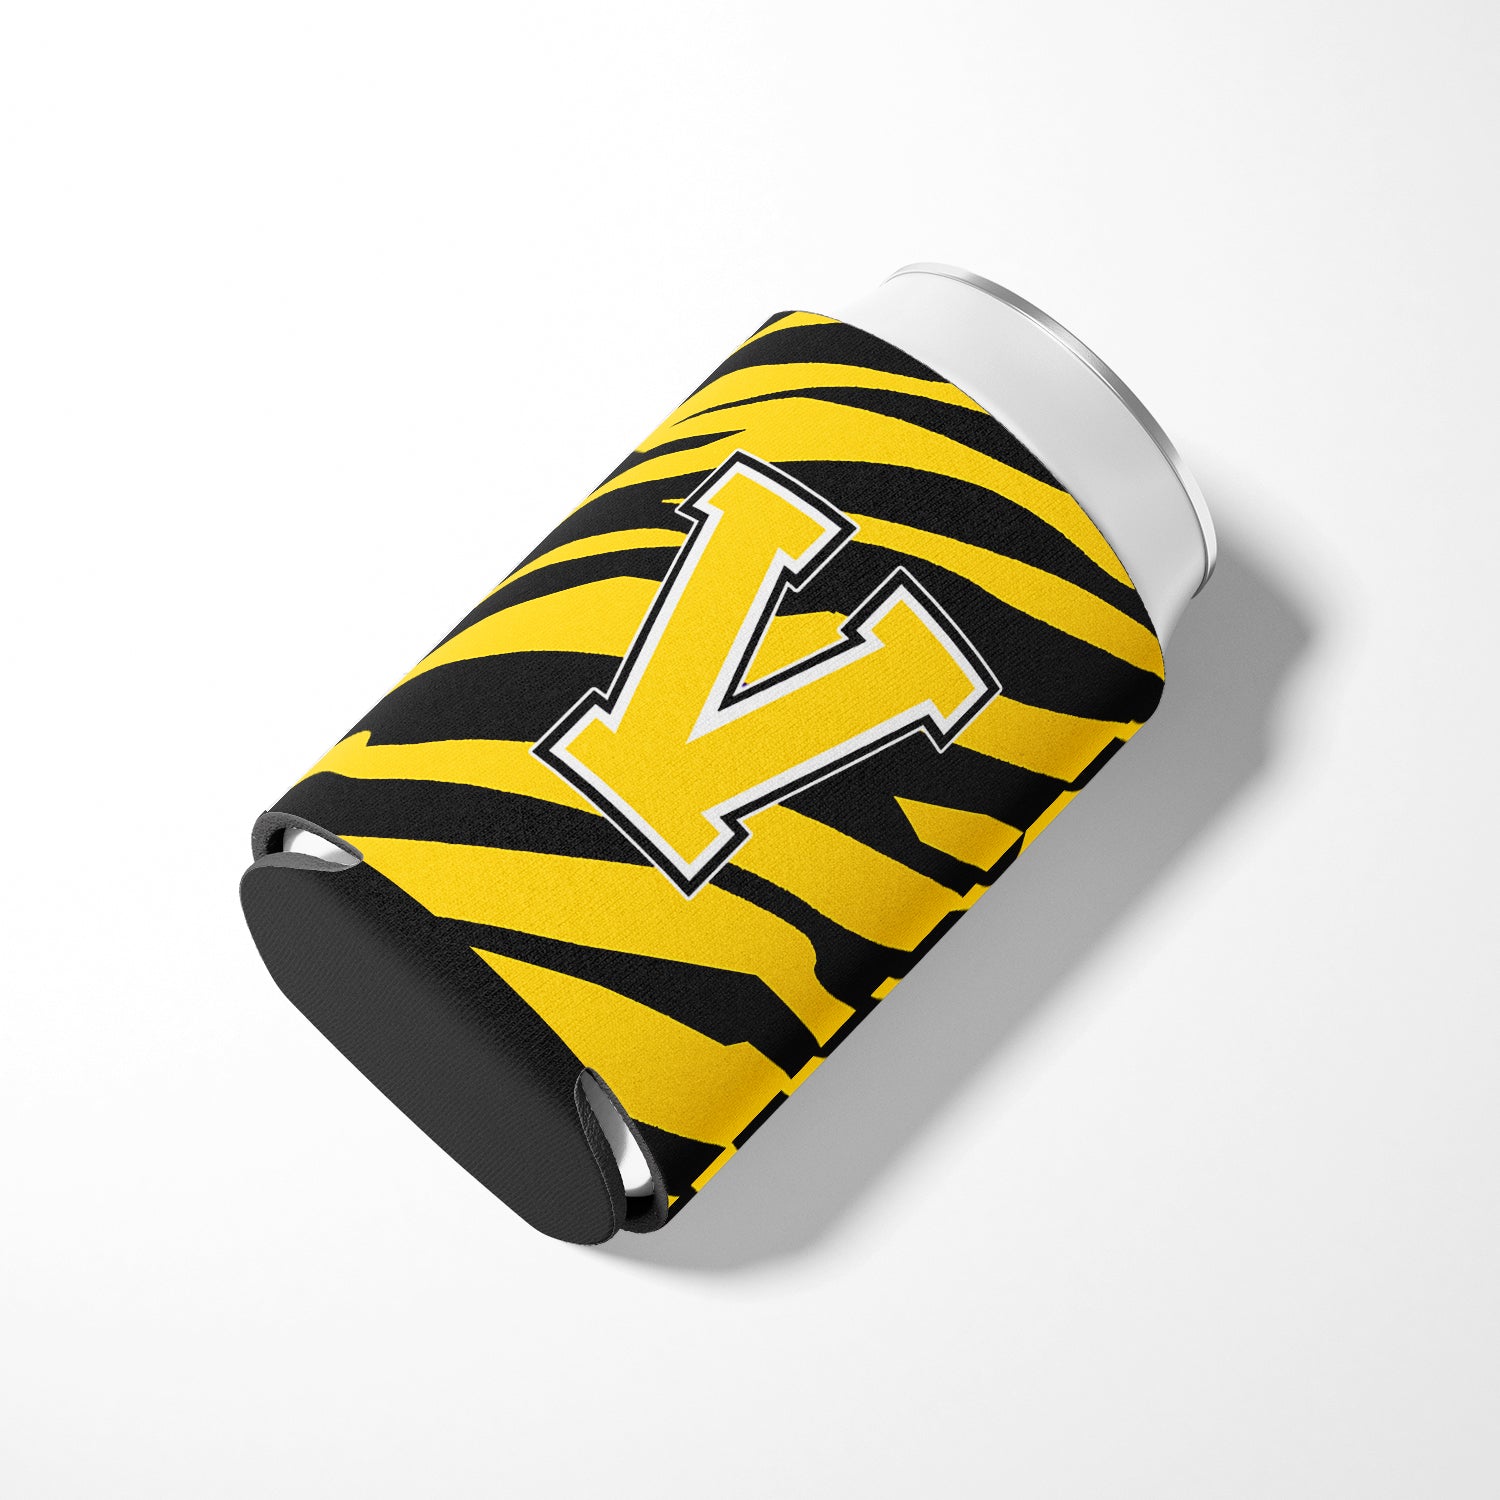 Letter V Initial Monogram - Tiger Stripe - Black Gold Can Beverage Insulator Hugger